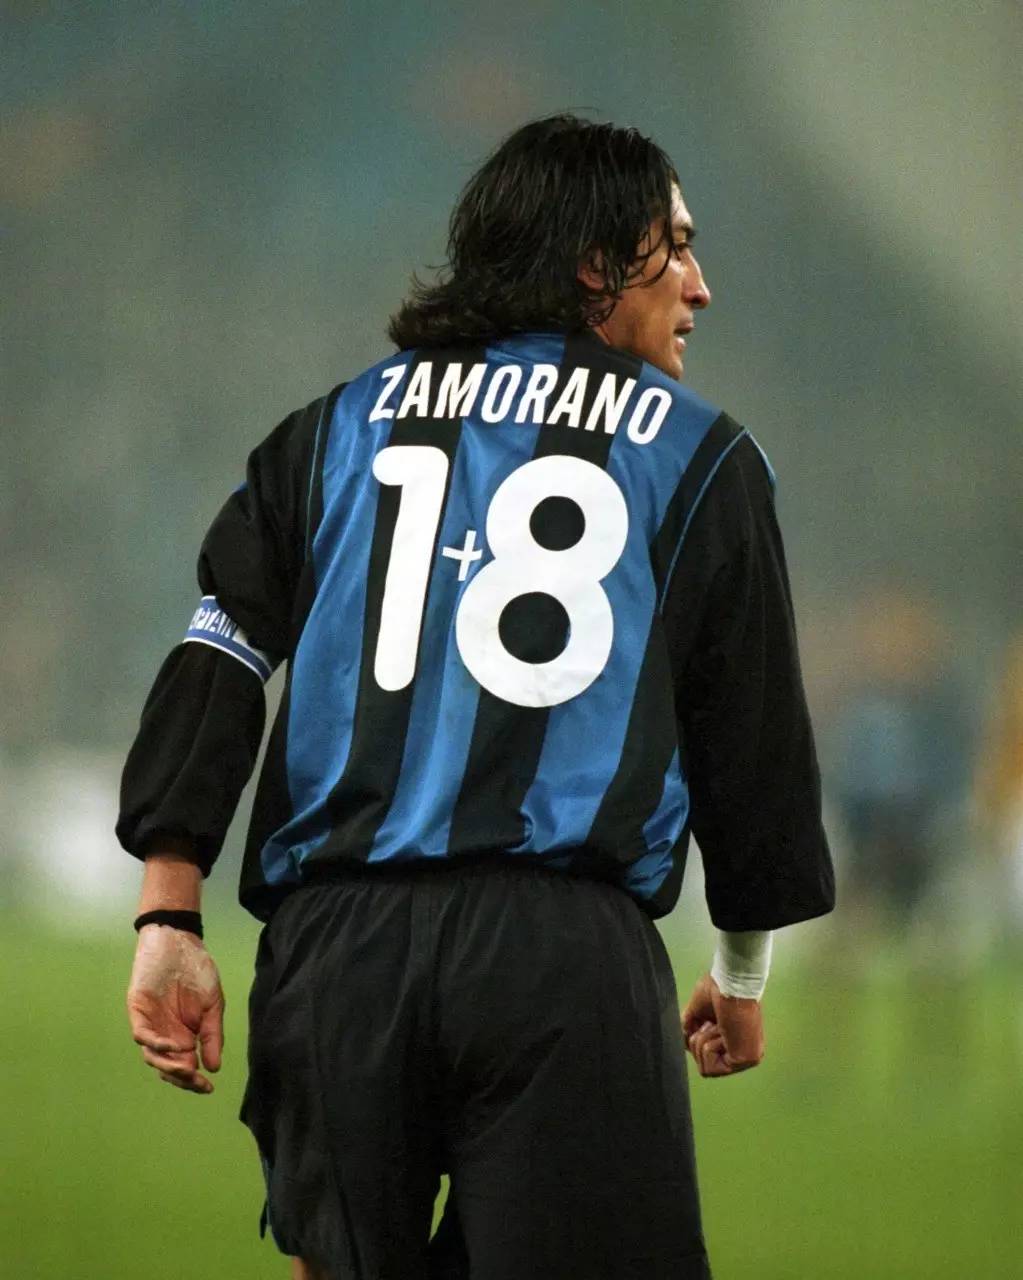 国米前锋萨莫拉诺在1996年加盟蓝黑军团,此前他总是穿着9号.